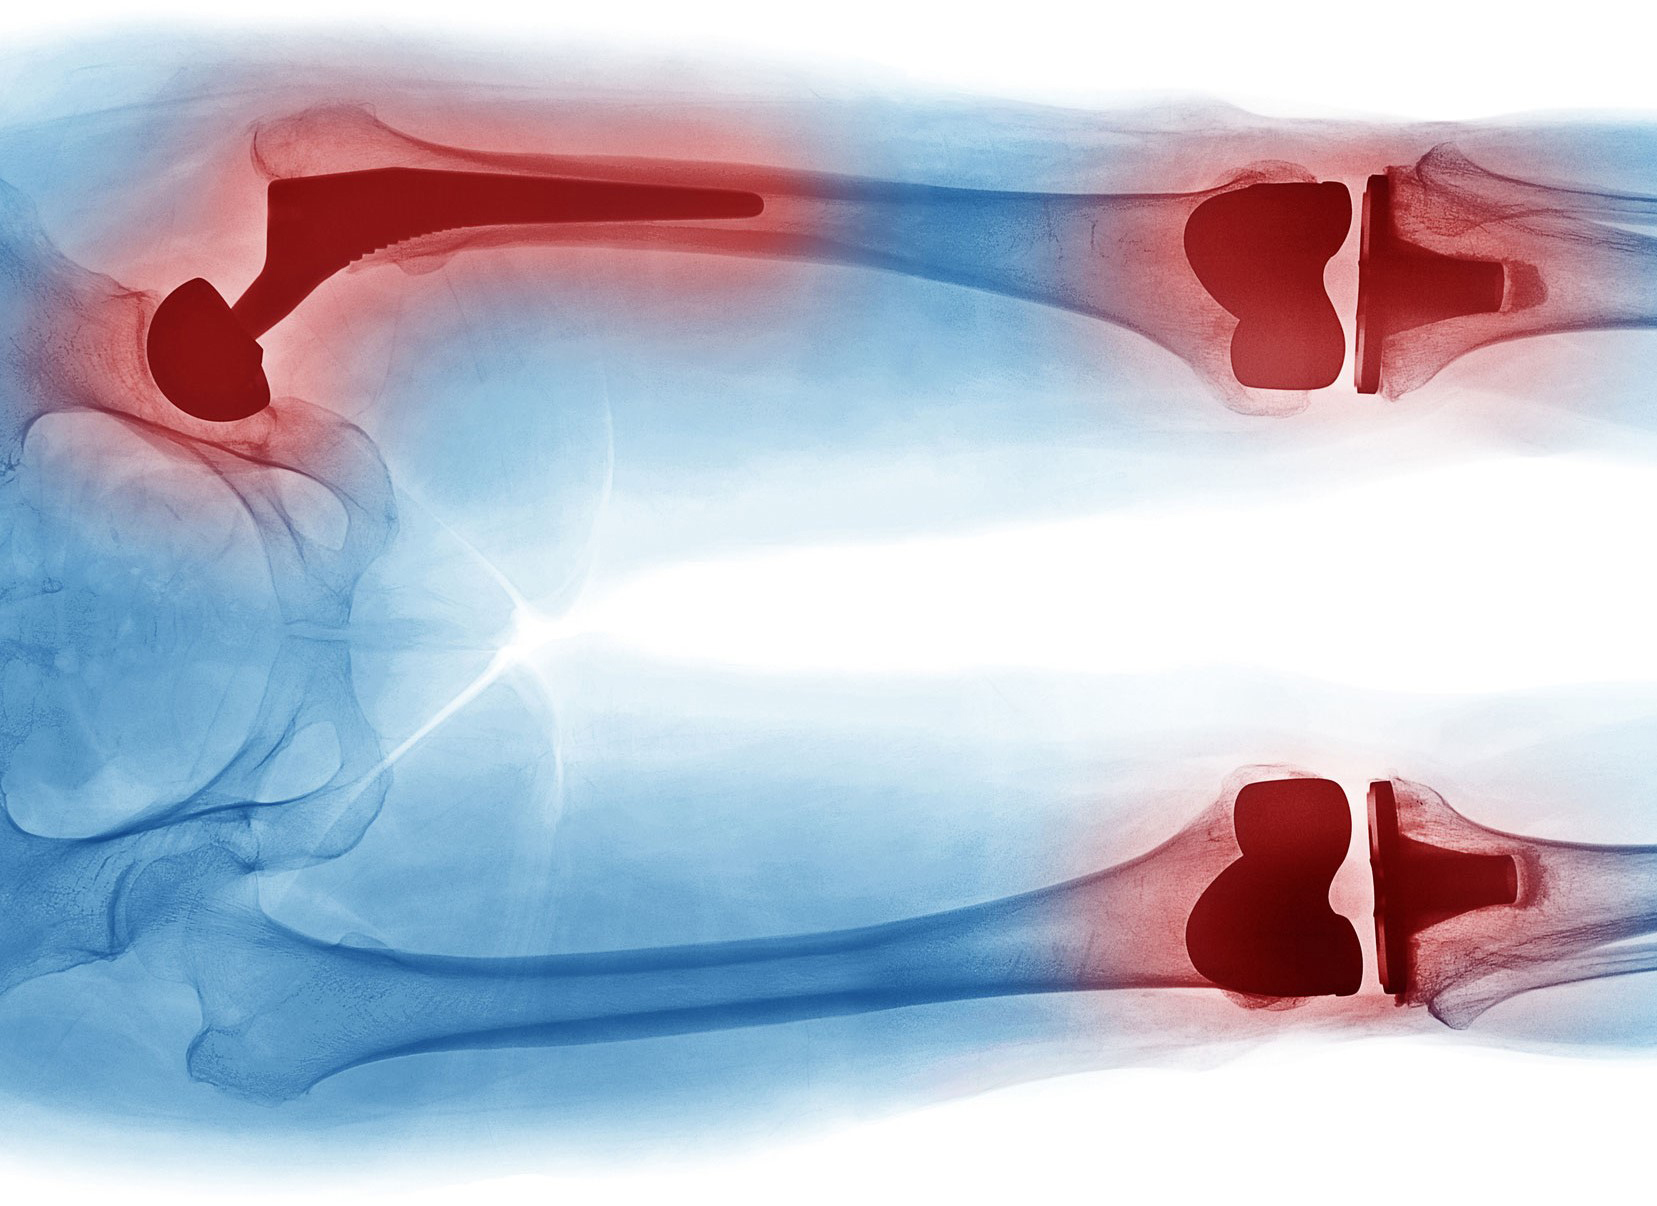 artroplastia de cadera 2